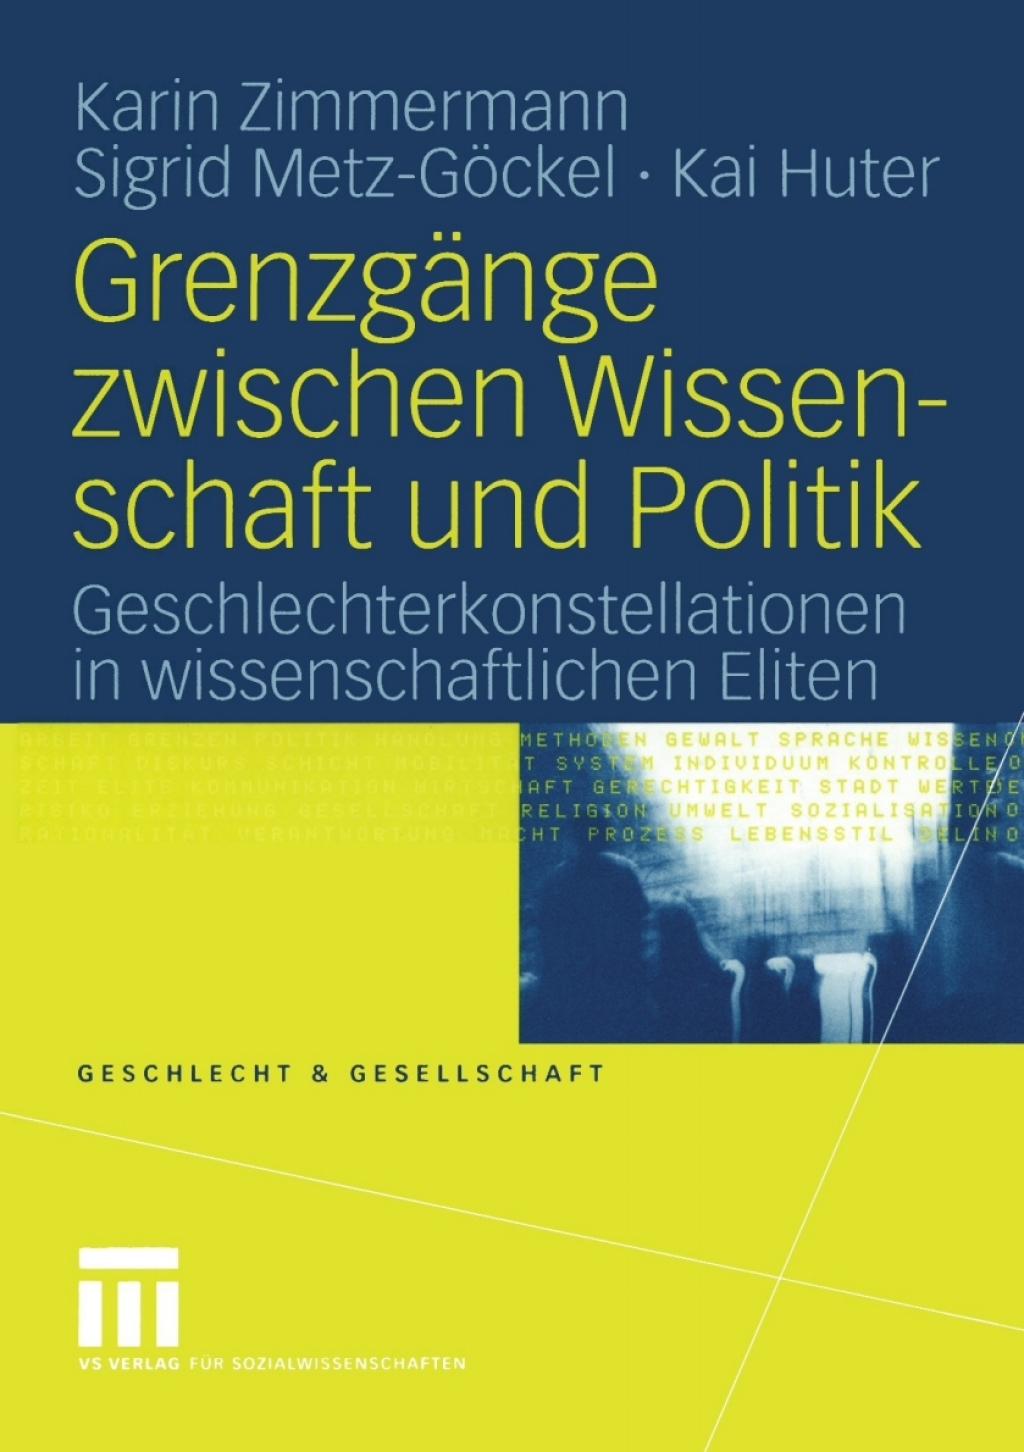 GrenzgÃ¤nge zwischen Wissenschaft und Politik (eBook Rental) - Karin Zimmermann; Sigrid Metz-GÃ¶ckel; Kai Huter,